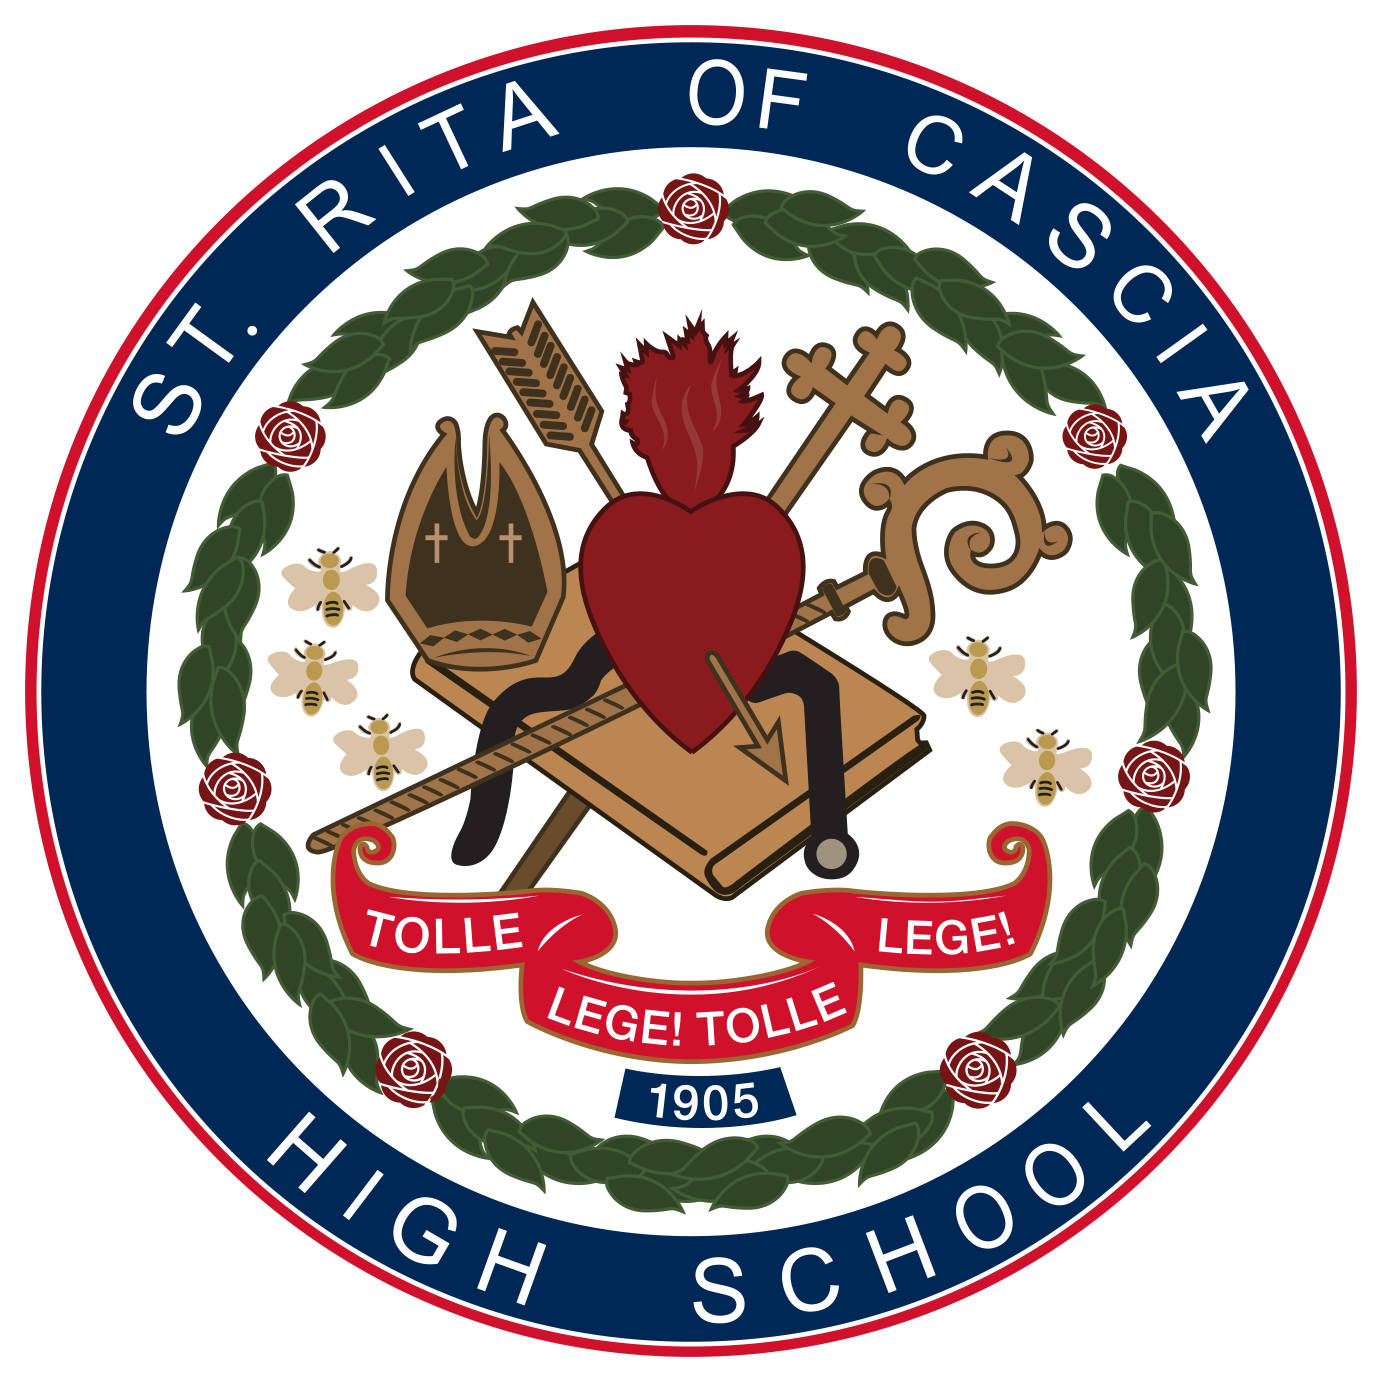 St. Rita School Seal.png